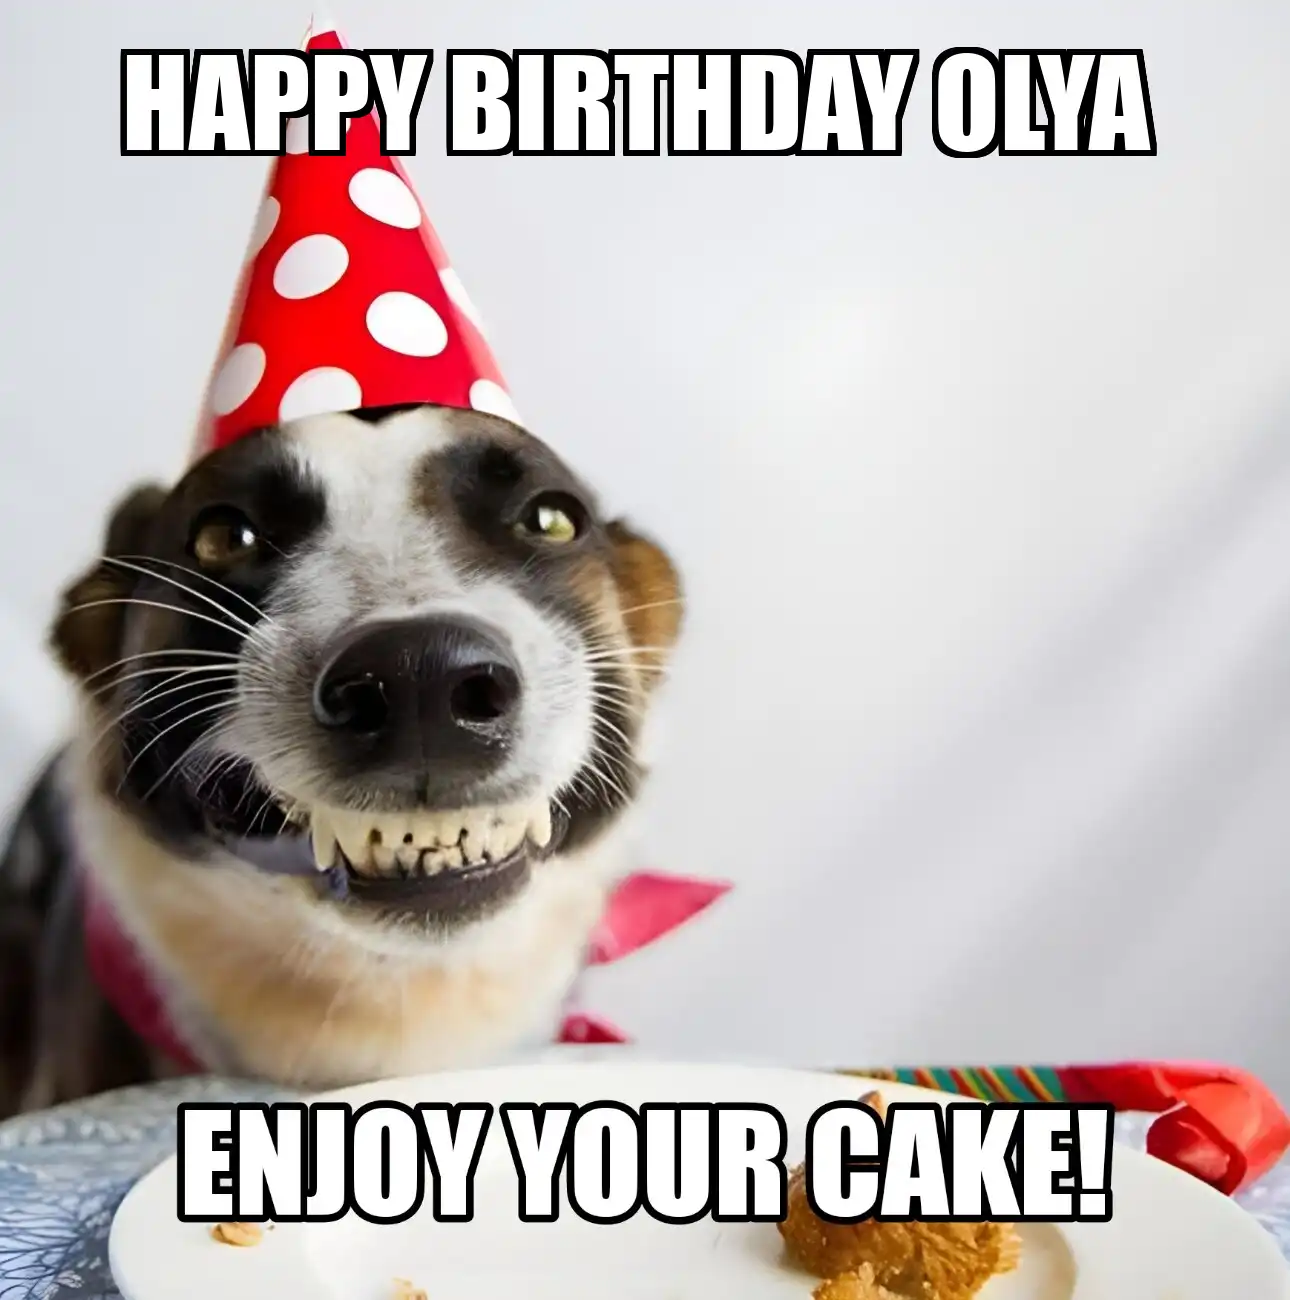 Happy Birthday Olya Enjoy Your Cake Dog Meme